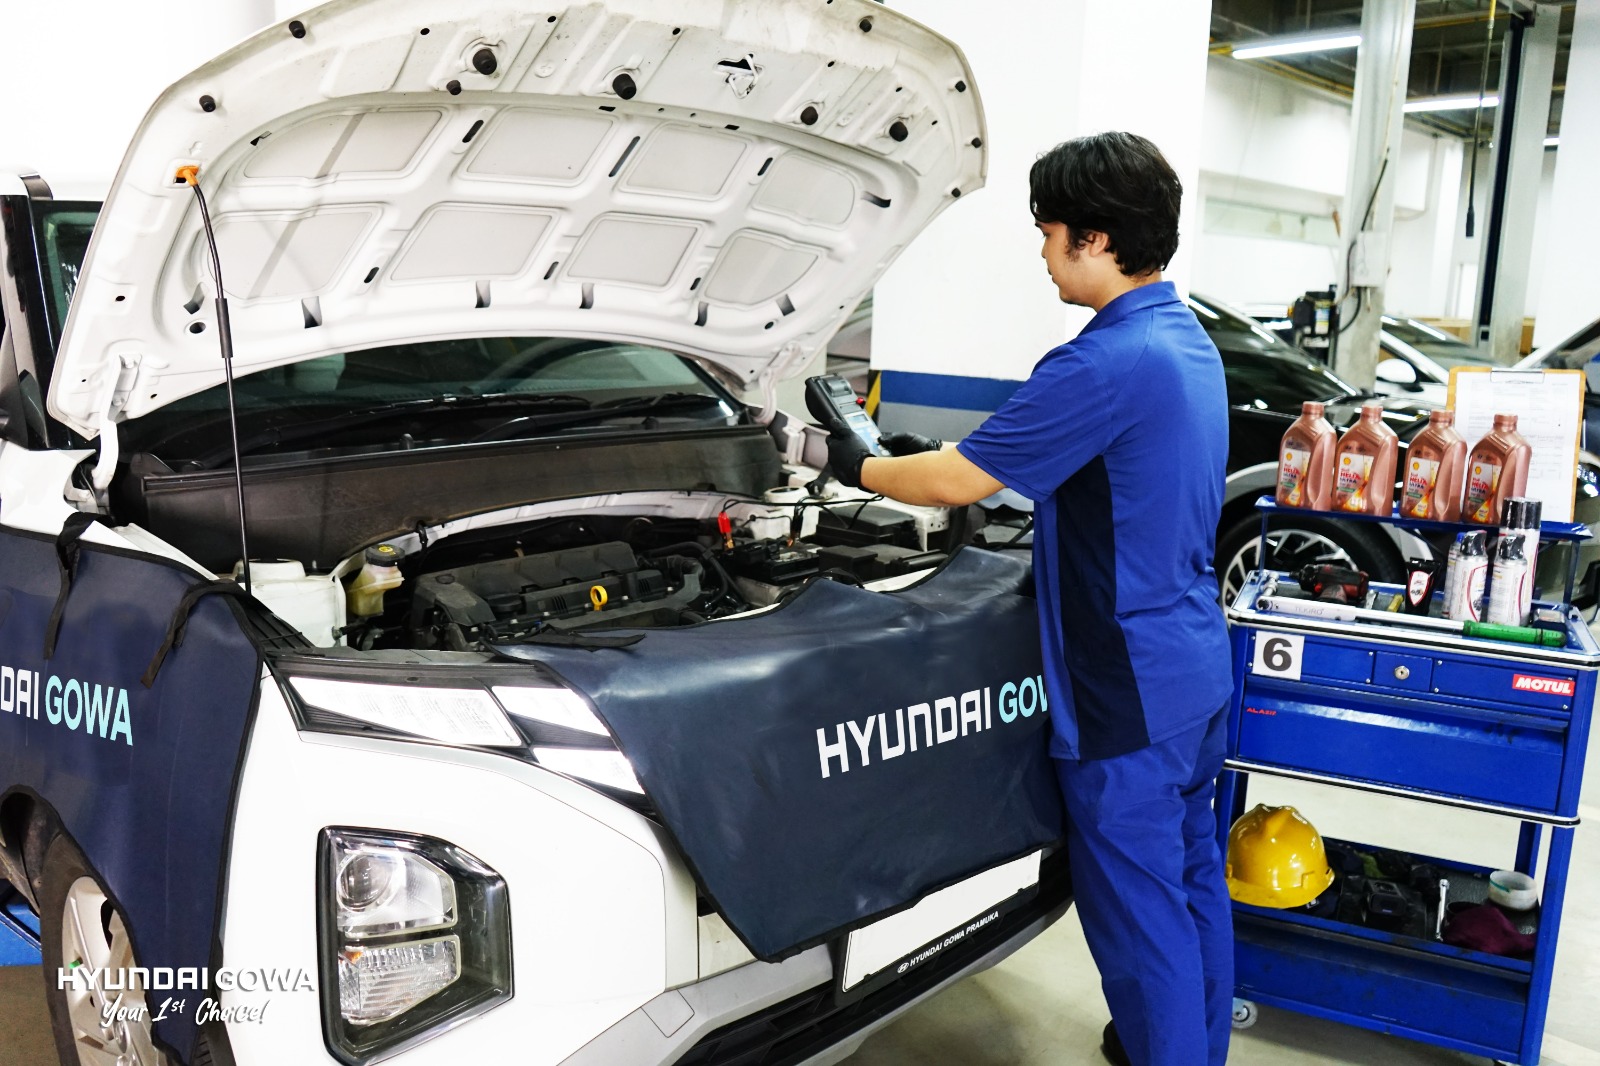 Ganti Oli Mobil di Hyundai Gowa Sebelum Mudik, dapat General Check Gratis 32 Titik